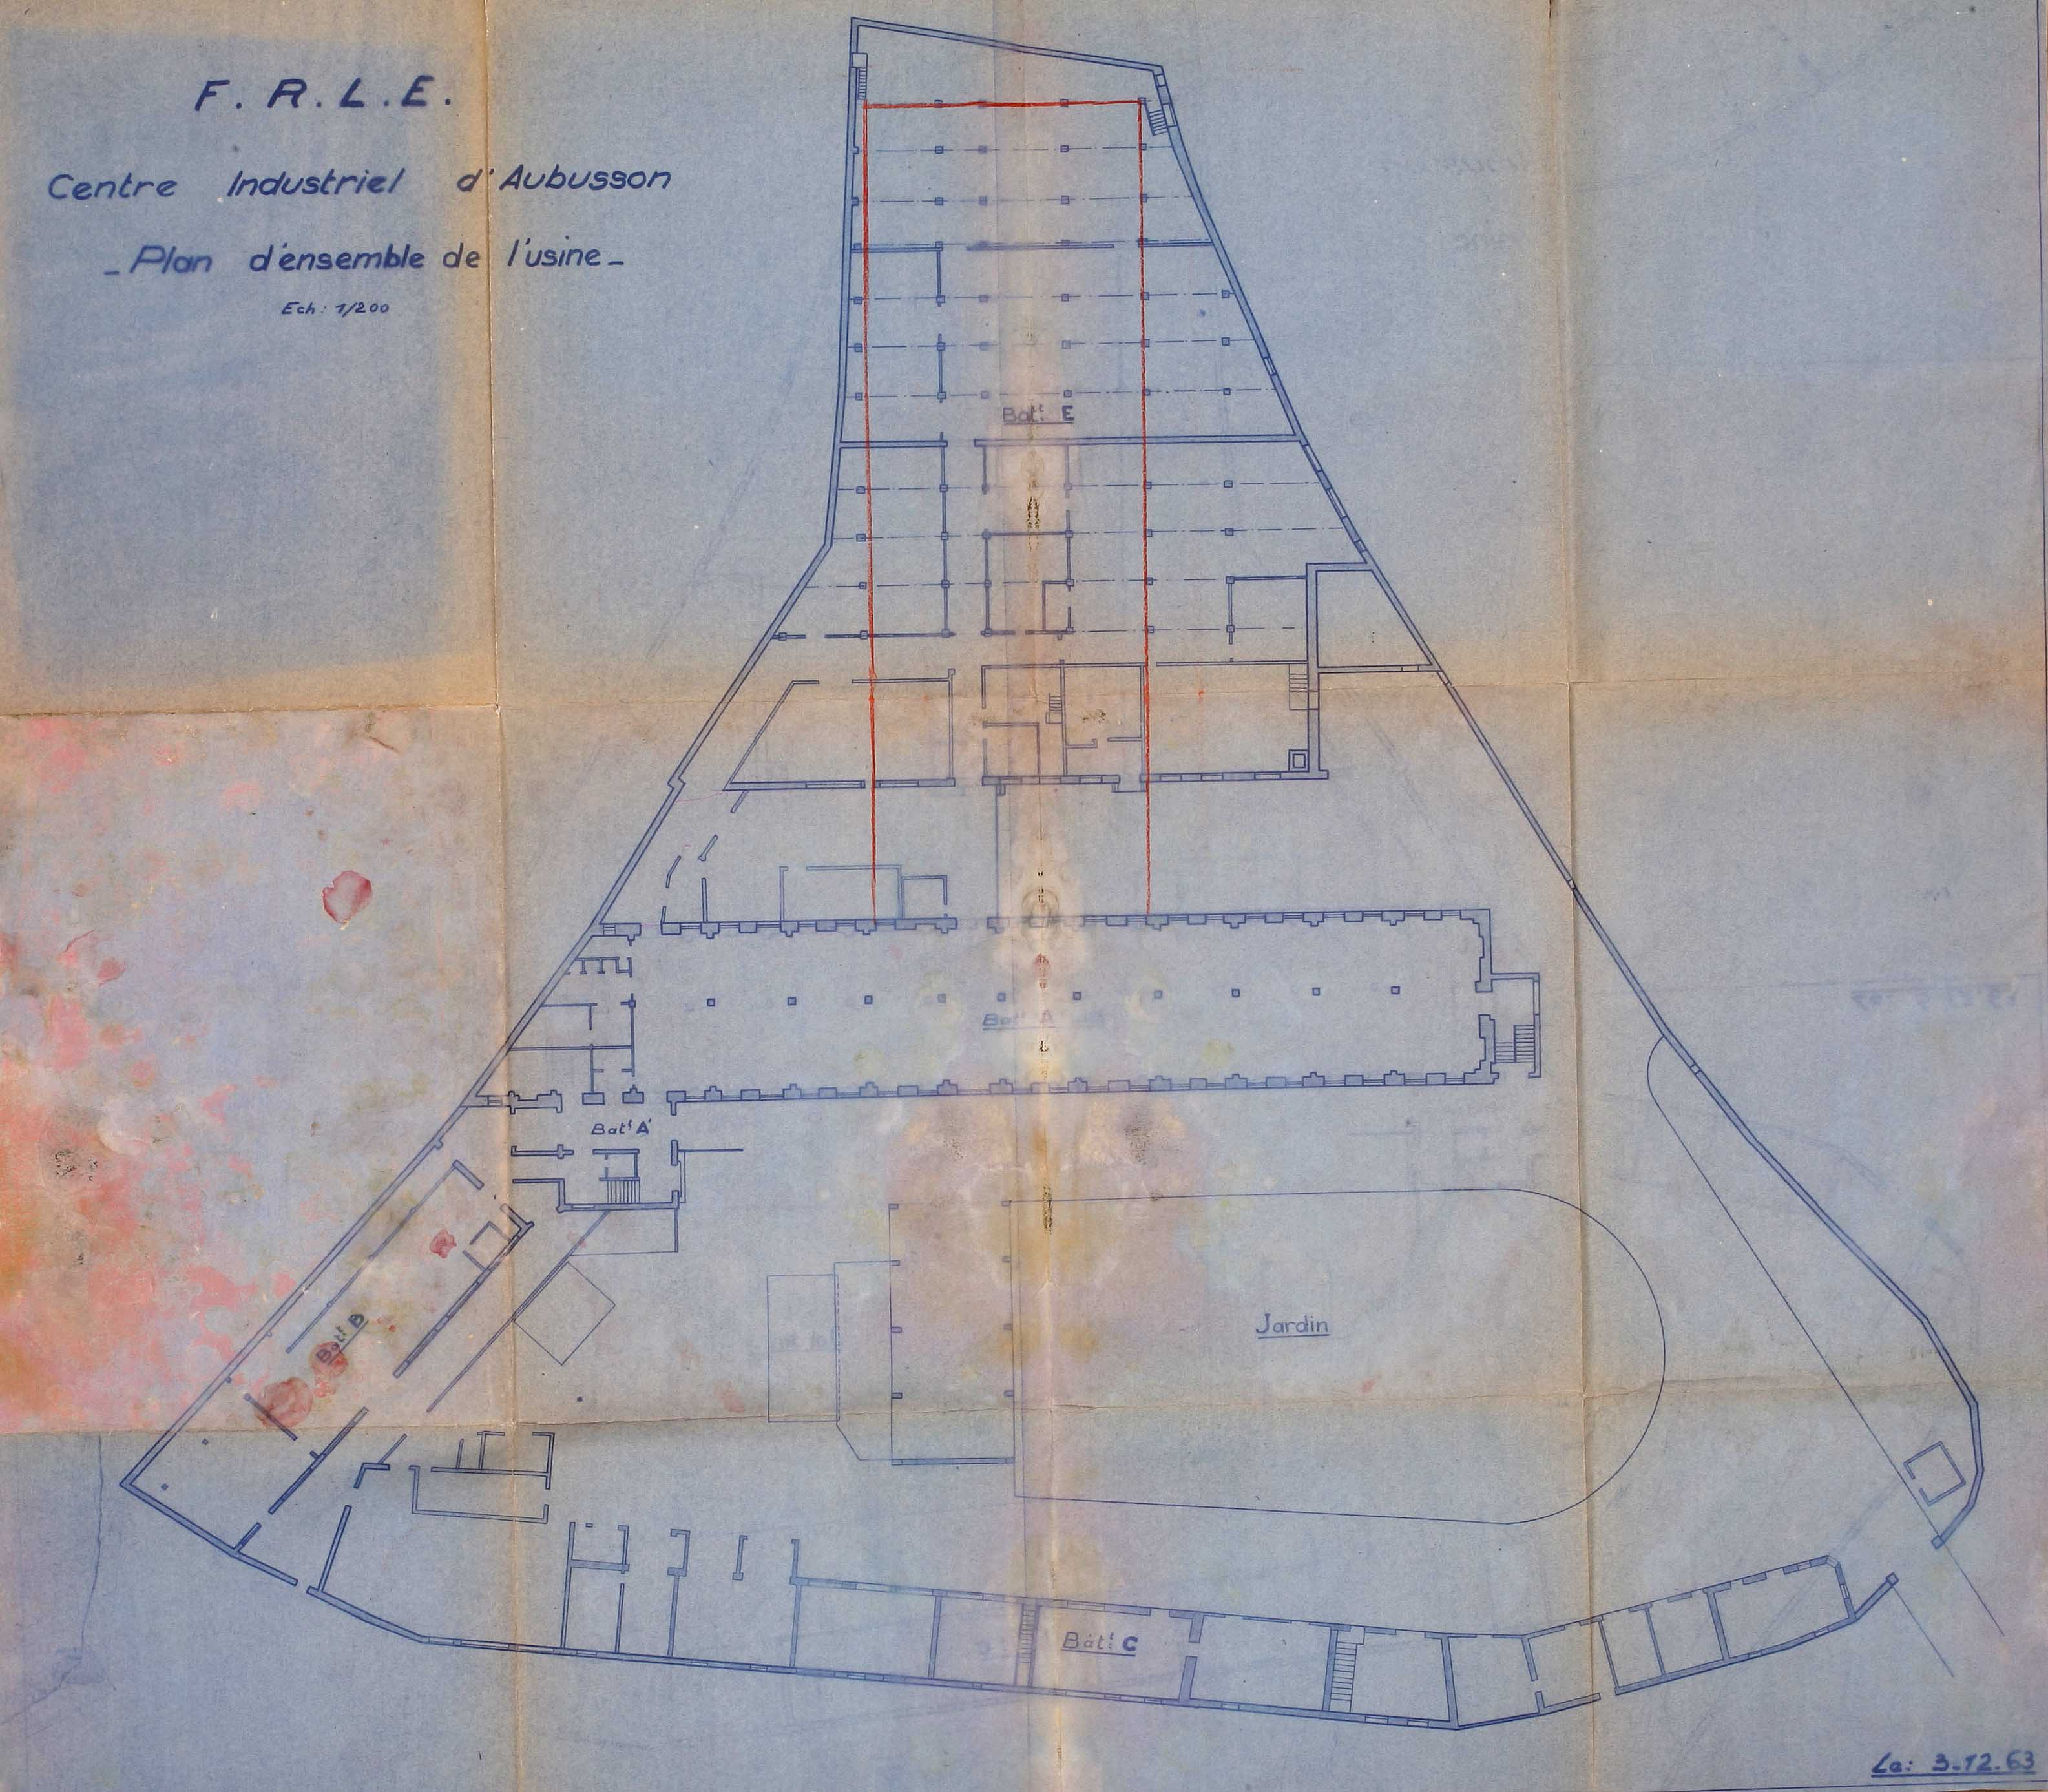 Plan d'ensemble du site de l'usine FRLE (1963) (AC Aubusson).